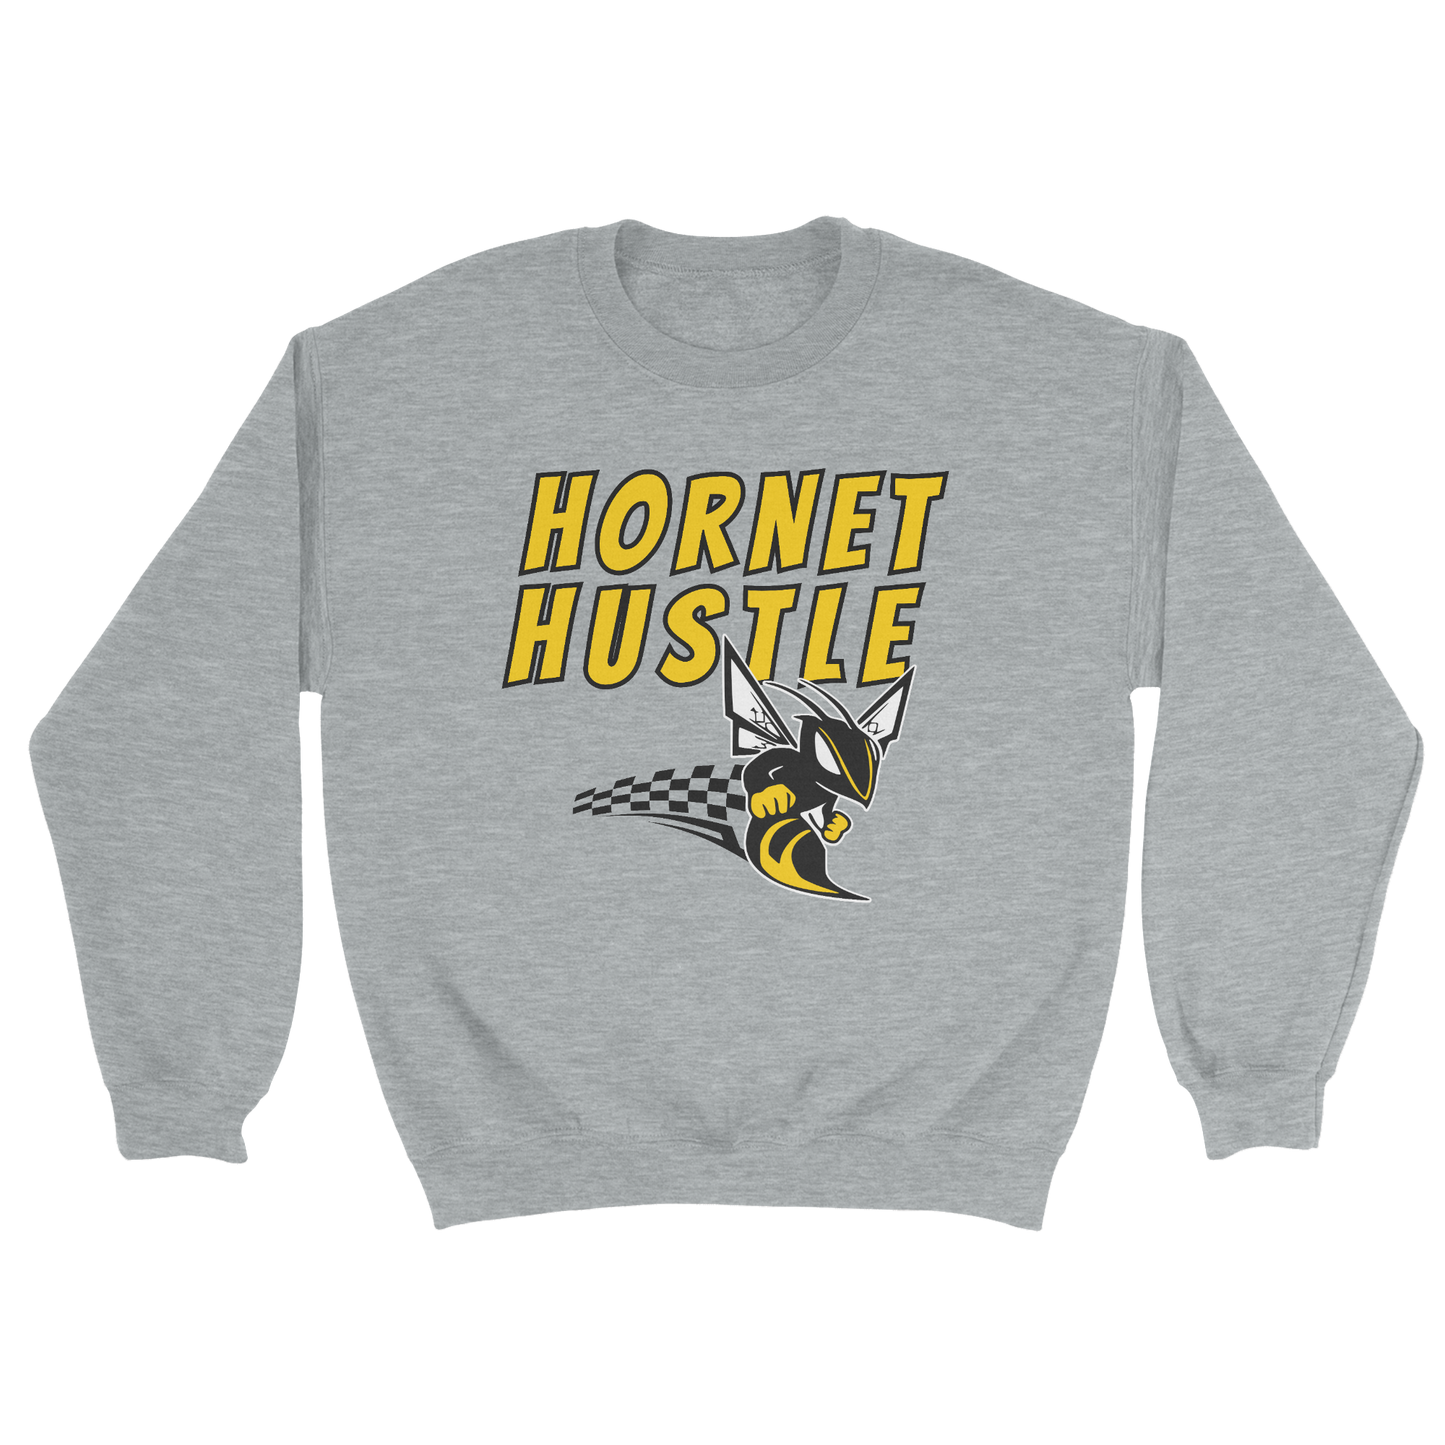 Adult Hornet Hustle